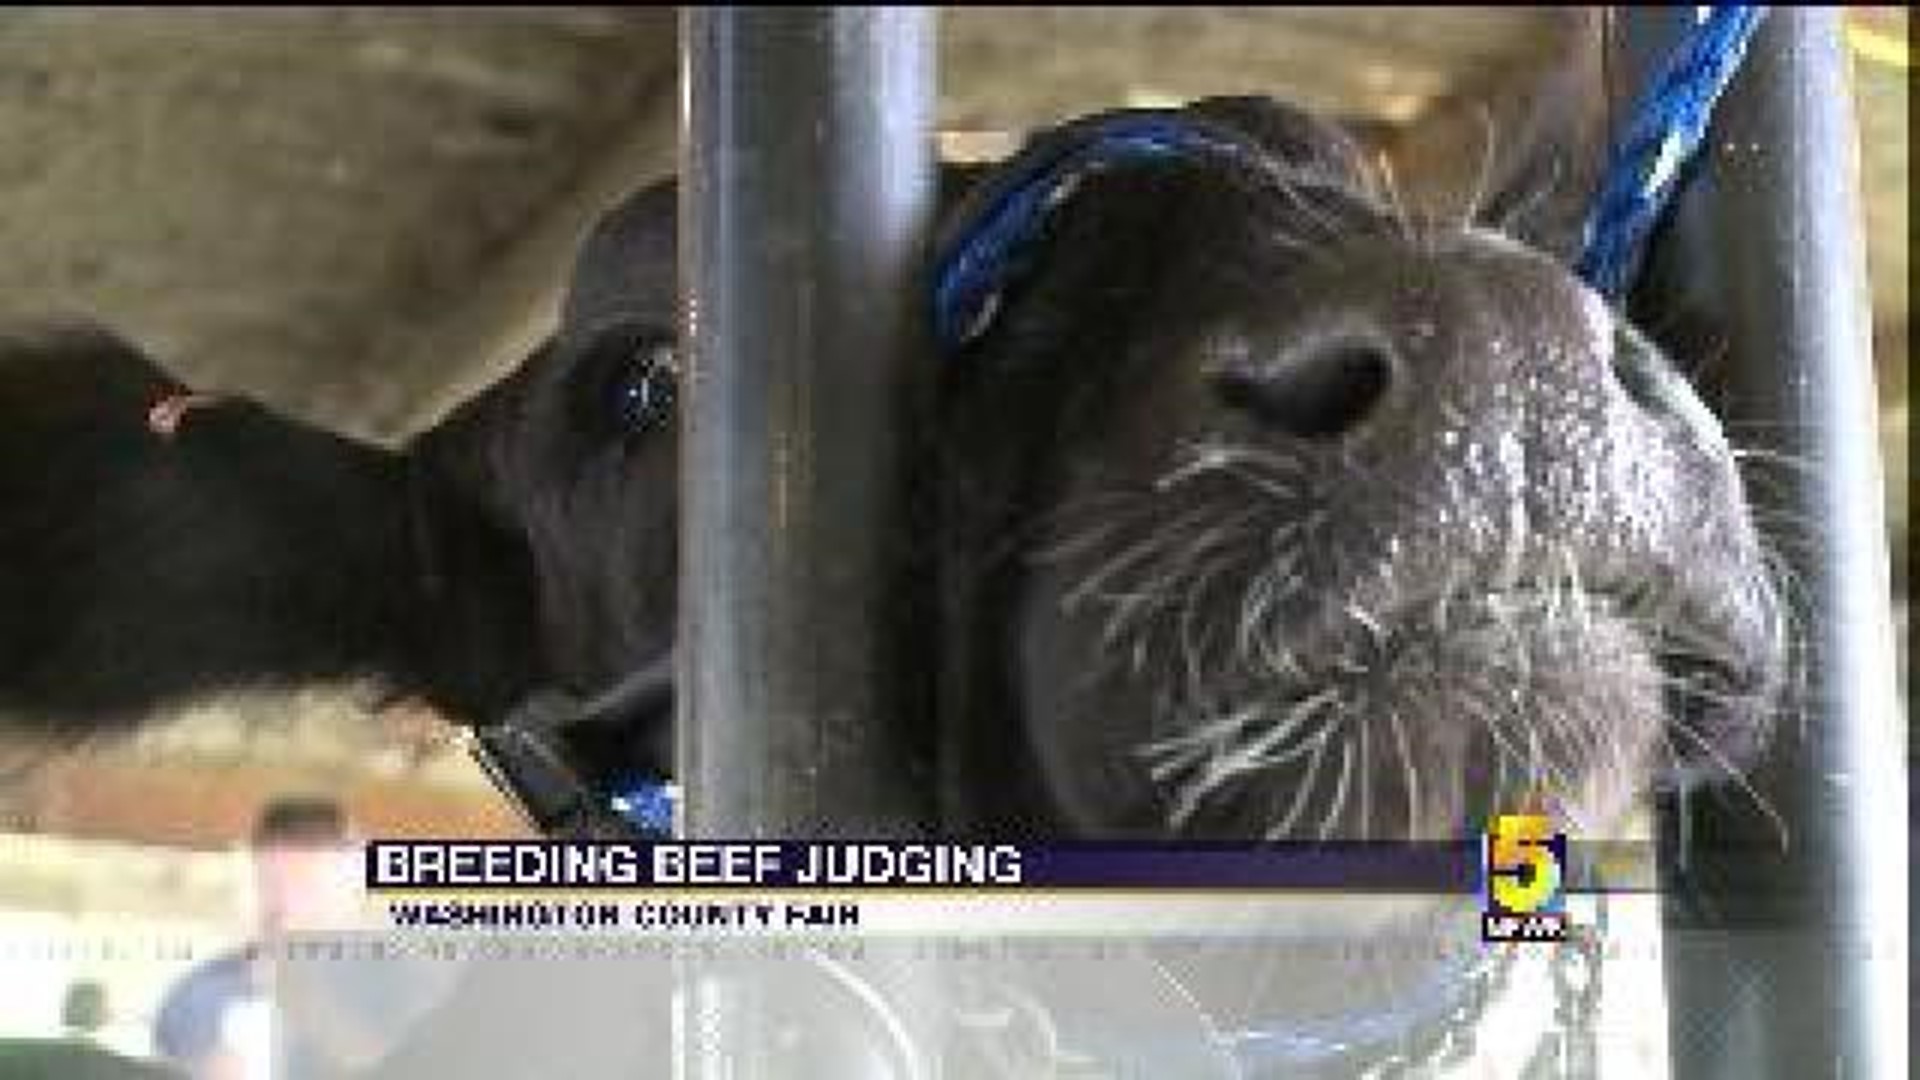 Kids Take Part in Beef Judging at Fair